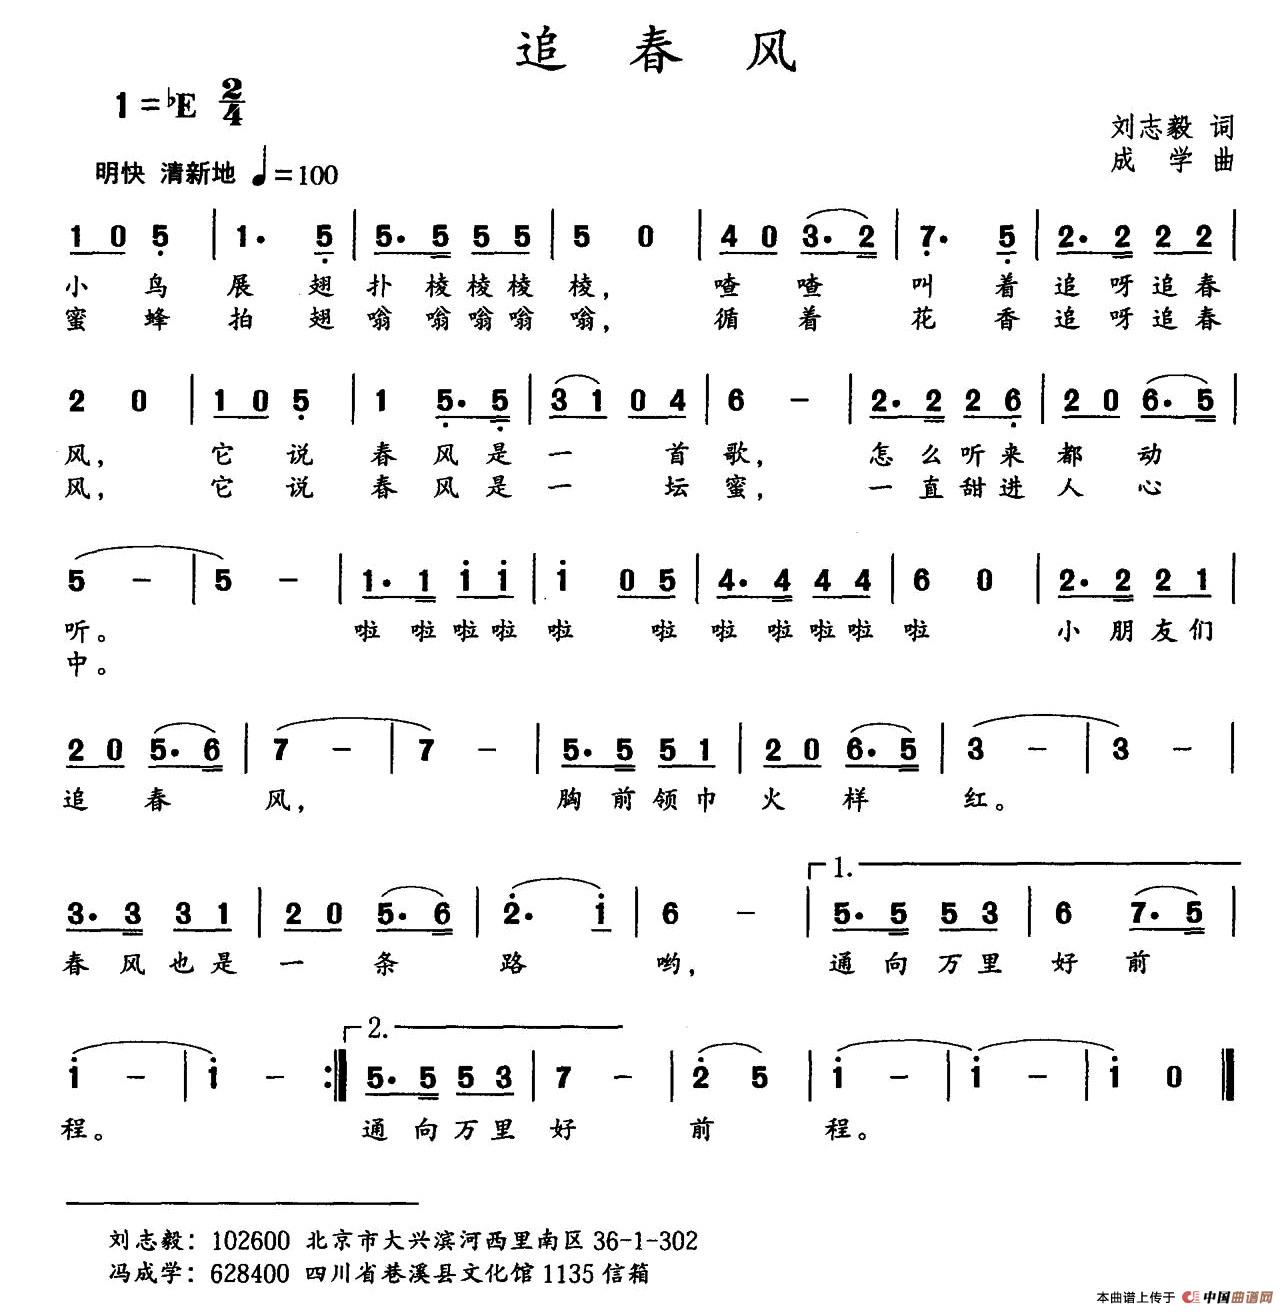 追春风（刘志毅词 成学曲）(1)_001 (1).jpg